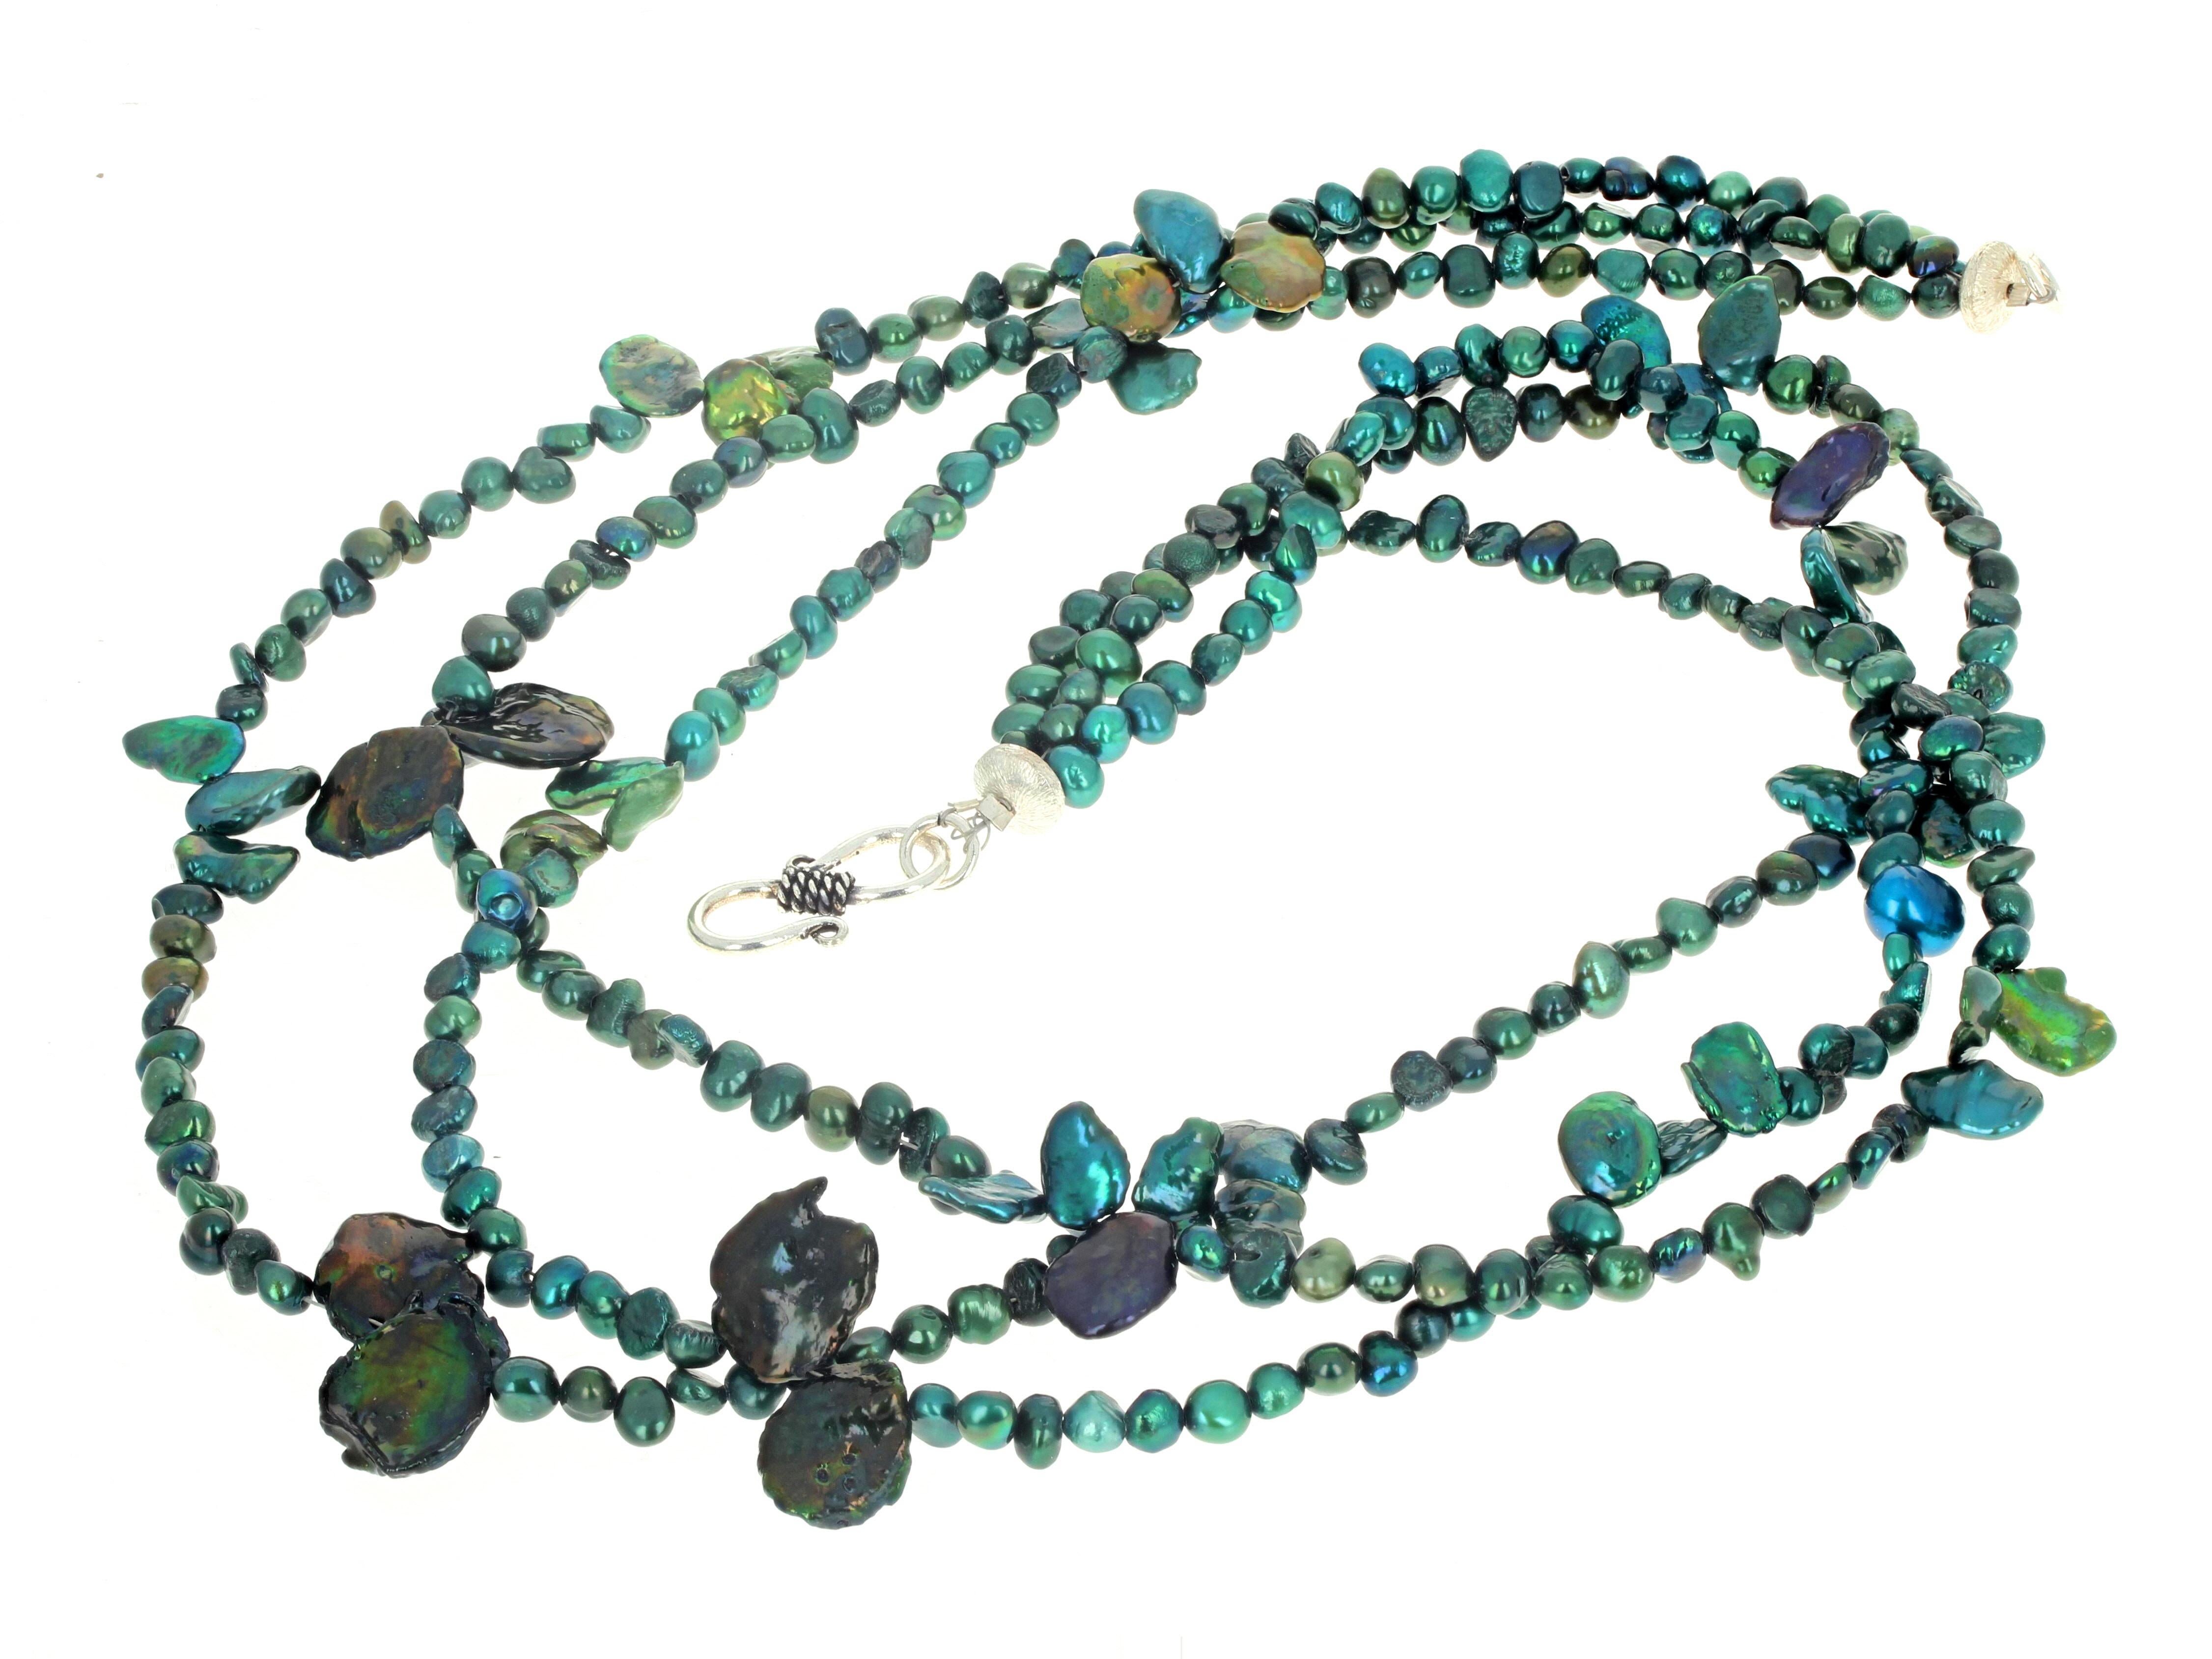 Ce magnifique triple rang de perles de culture bleu-vert, rehaussé par les coquillages naturels de perles bleu-vert, est serti dans ce collier à trois rangs de 19 1/2 pouces de long.  Ils font des allers-retours magnifiques.  Le fermoir en argent